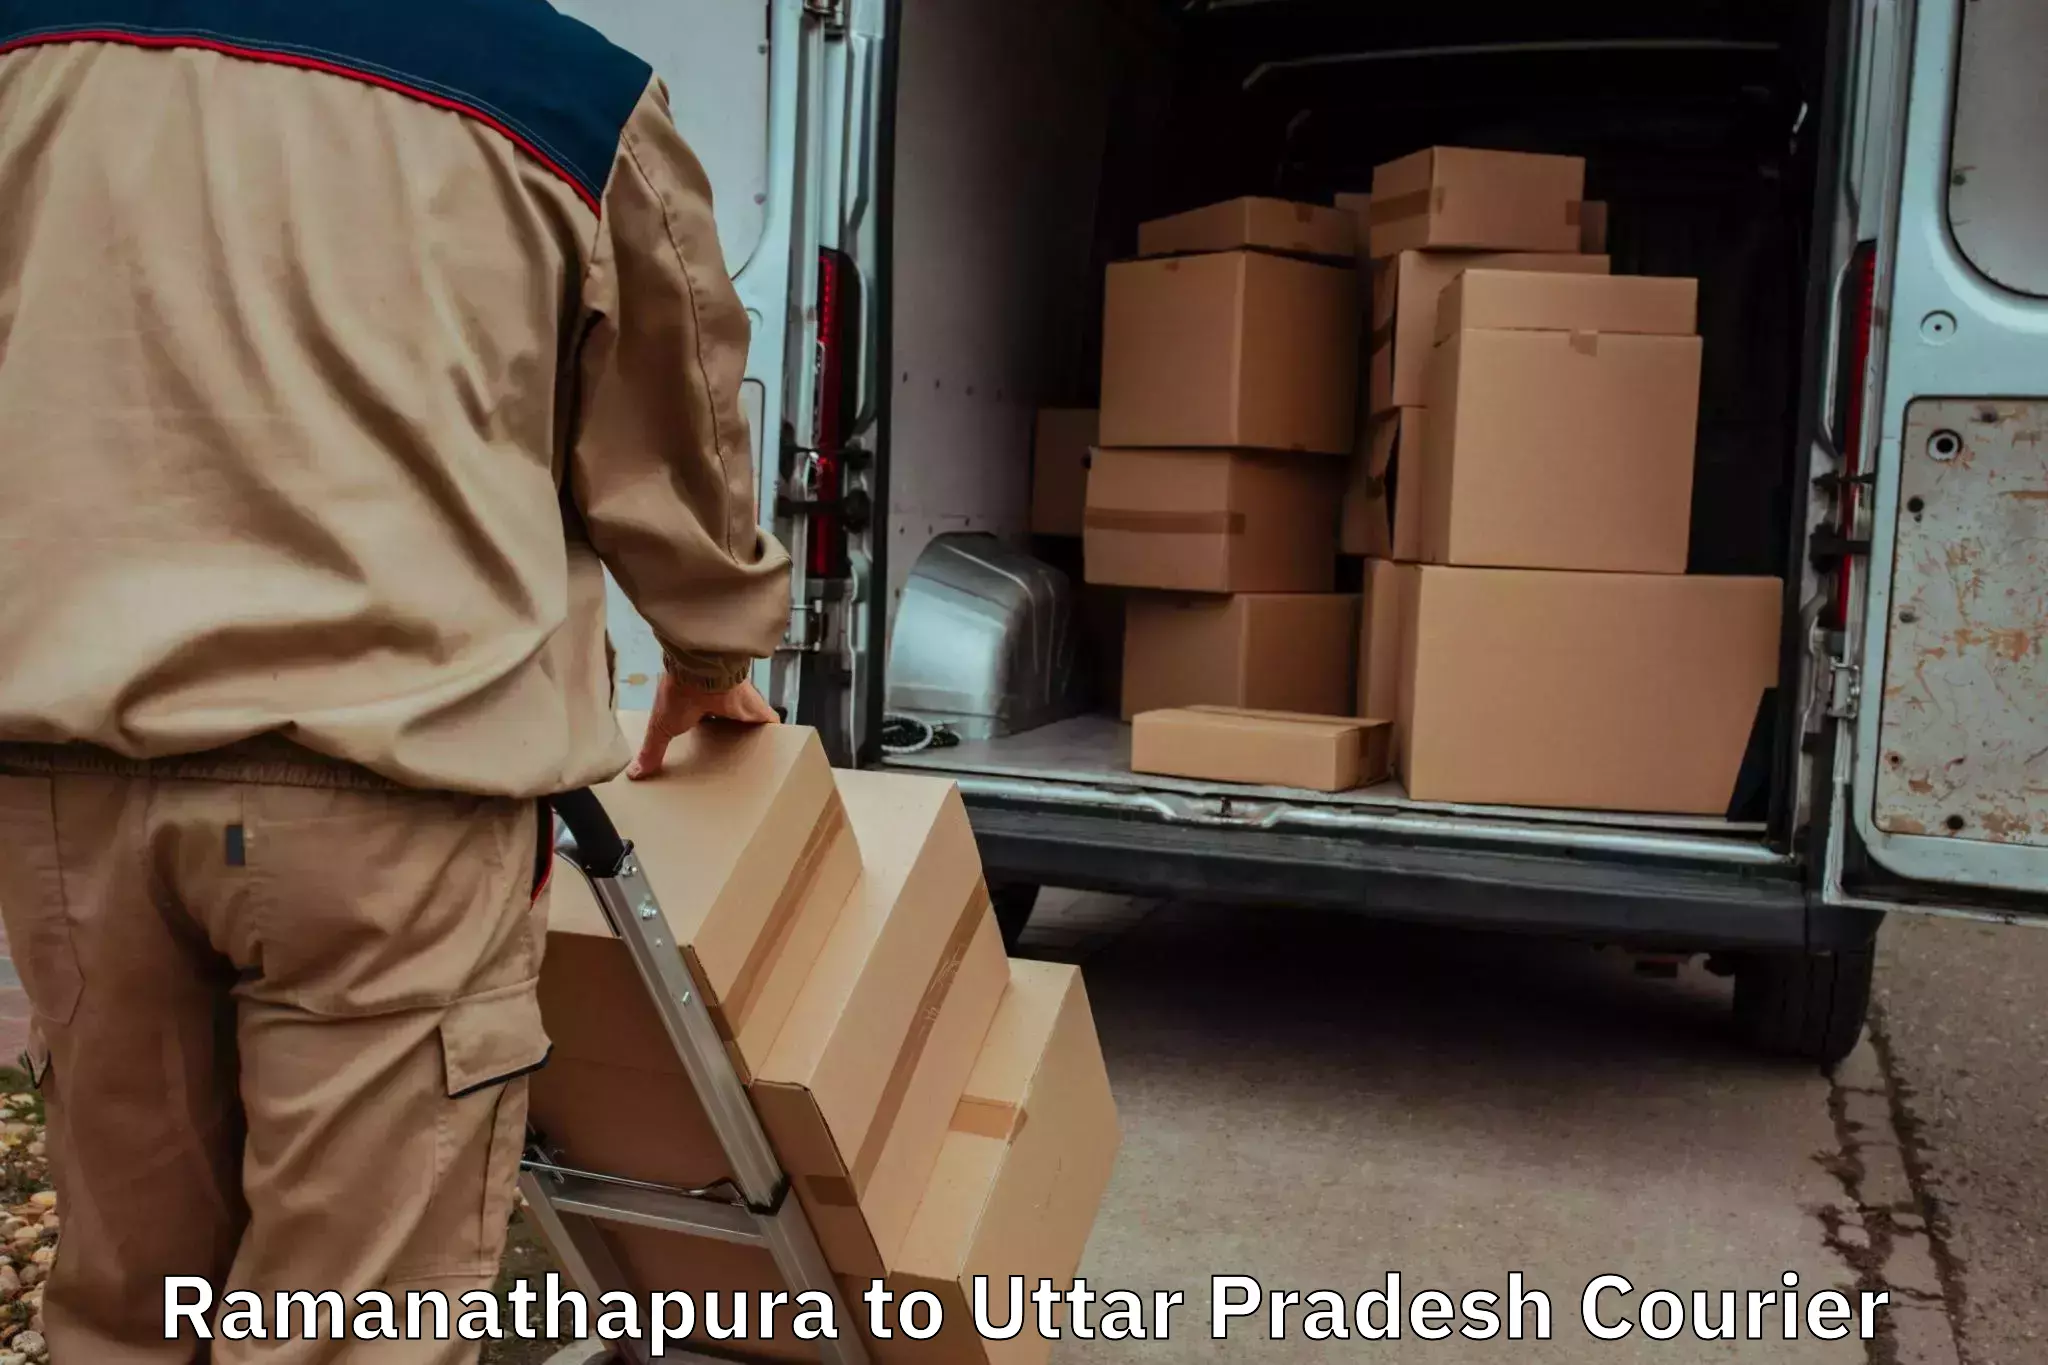 Stress-free moving Ramanathapura to Dhaurahara